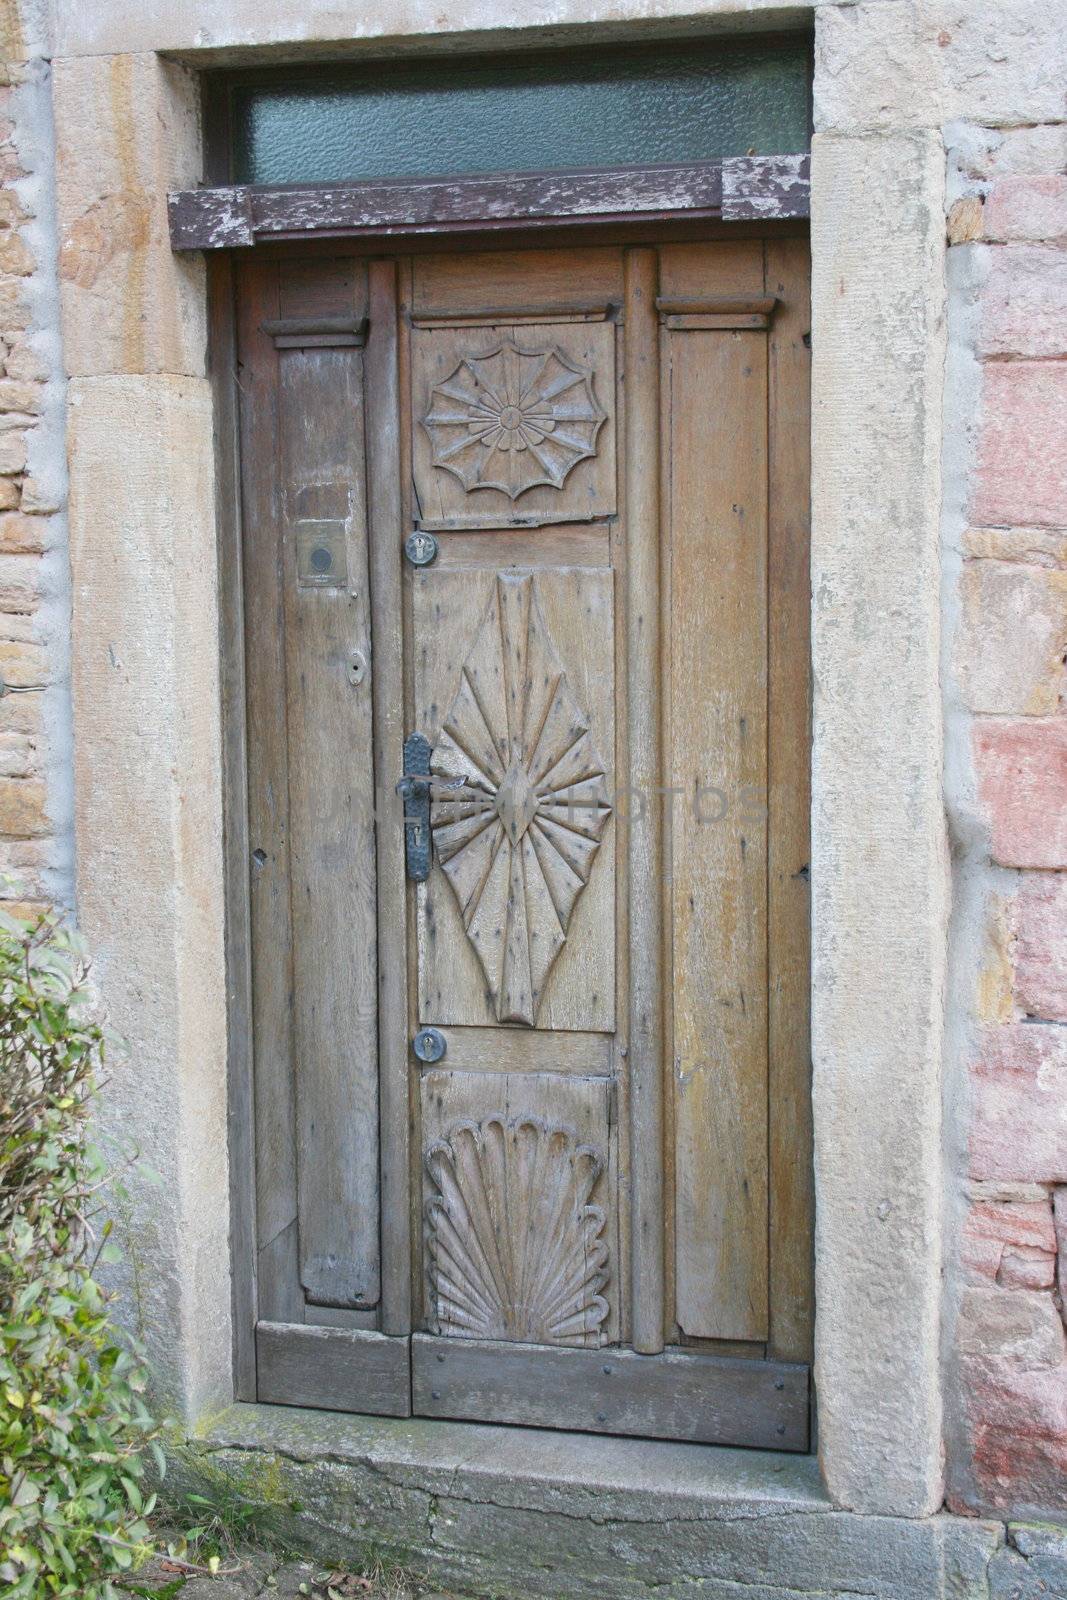 eine alte verzierte Holzhaustür,mit Phantasie muster	
an old carved wooden door pattern with imagination